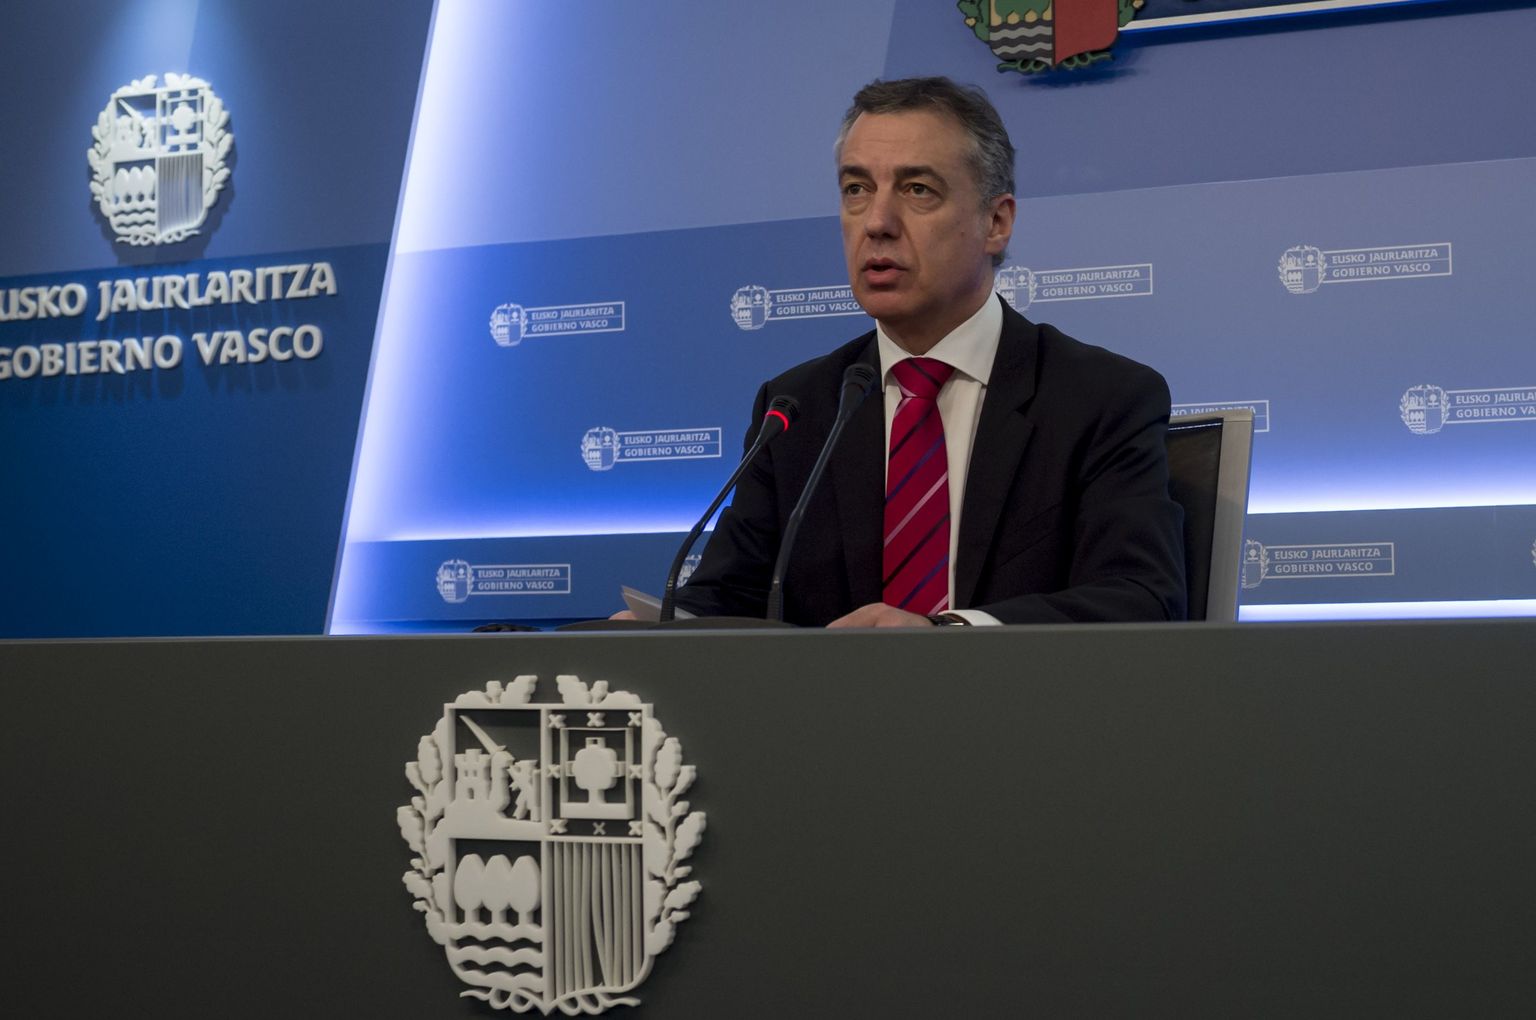 Baski regionaalse valitsuse juht Inigo Urkullu andis märtsi keskel teada, et baskide separatistlik rühmitus ETA kavatseb täielikult desarmeeruda 8. aprillil.